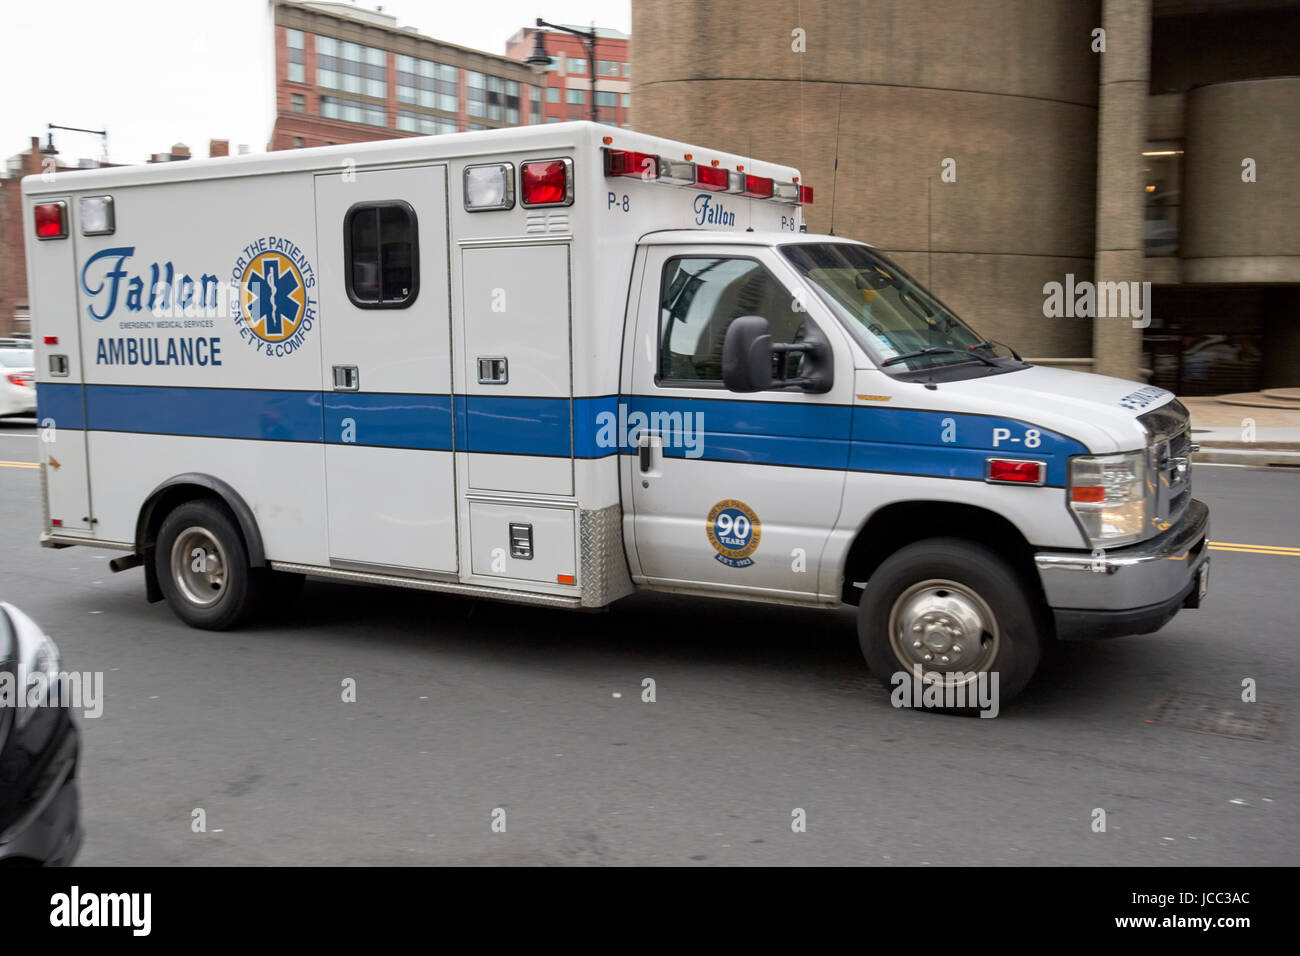 Fallon ambulance services médicaux d'urgence sur appel accélération à Boston USA, flou délibéré Banque D'Images